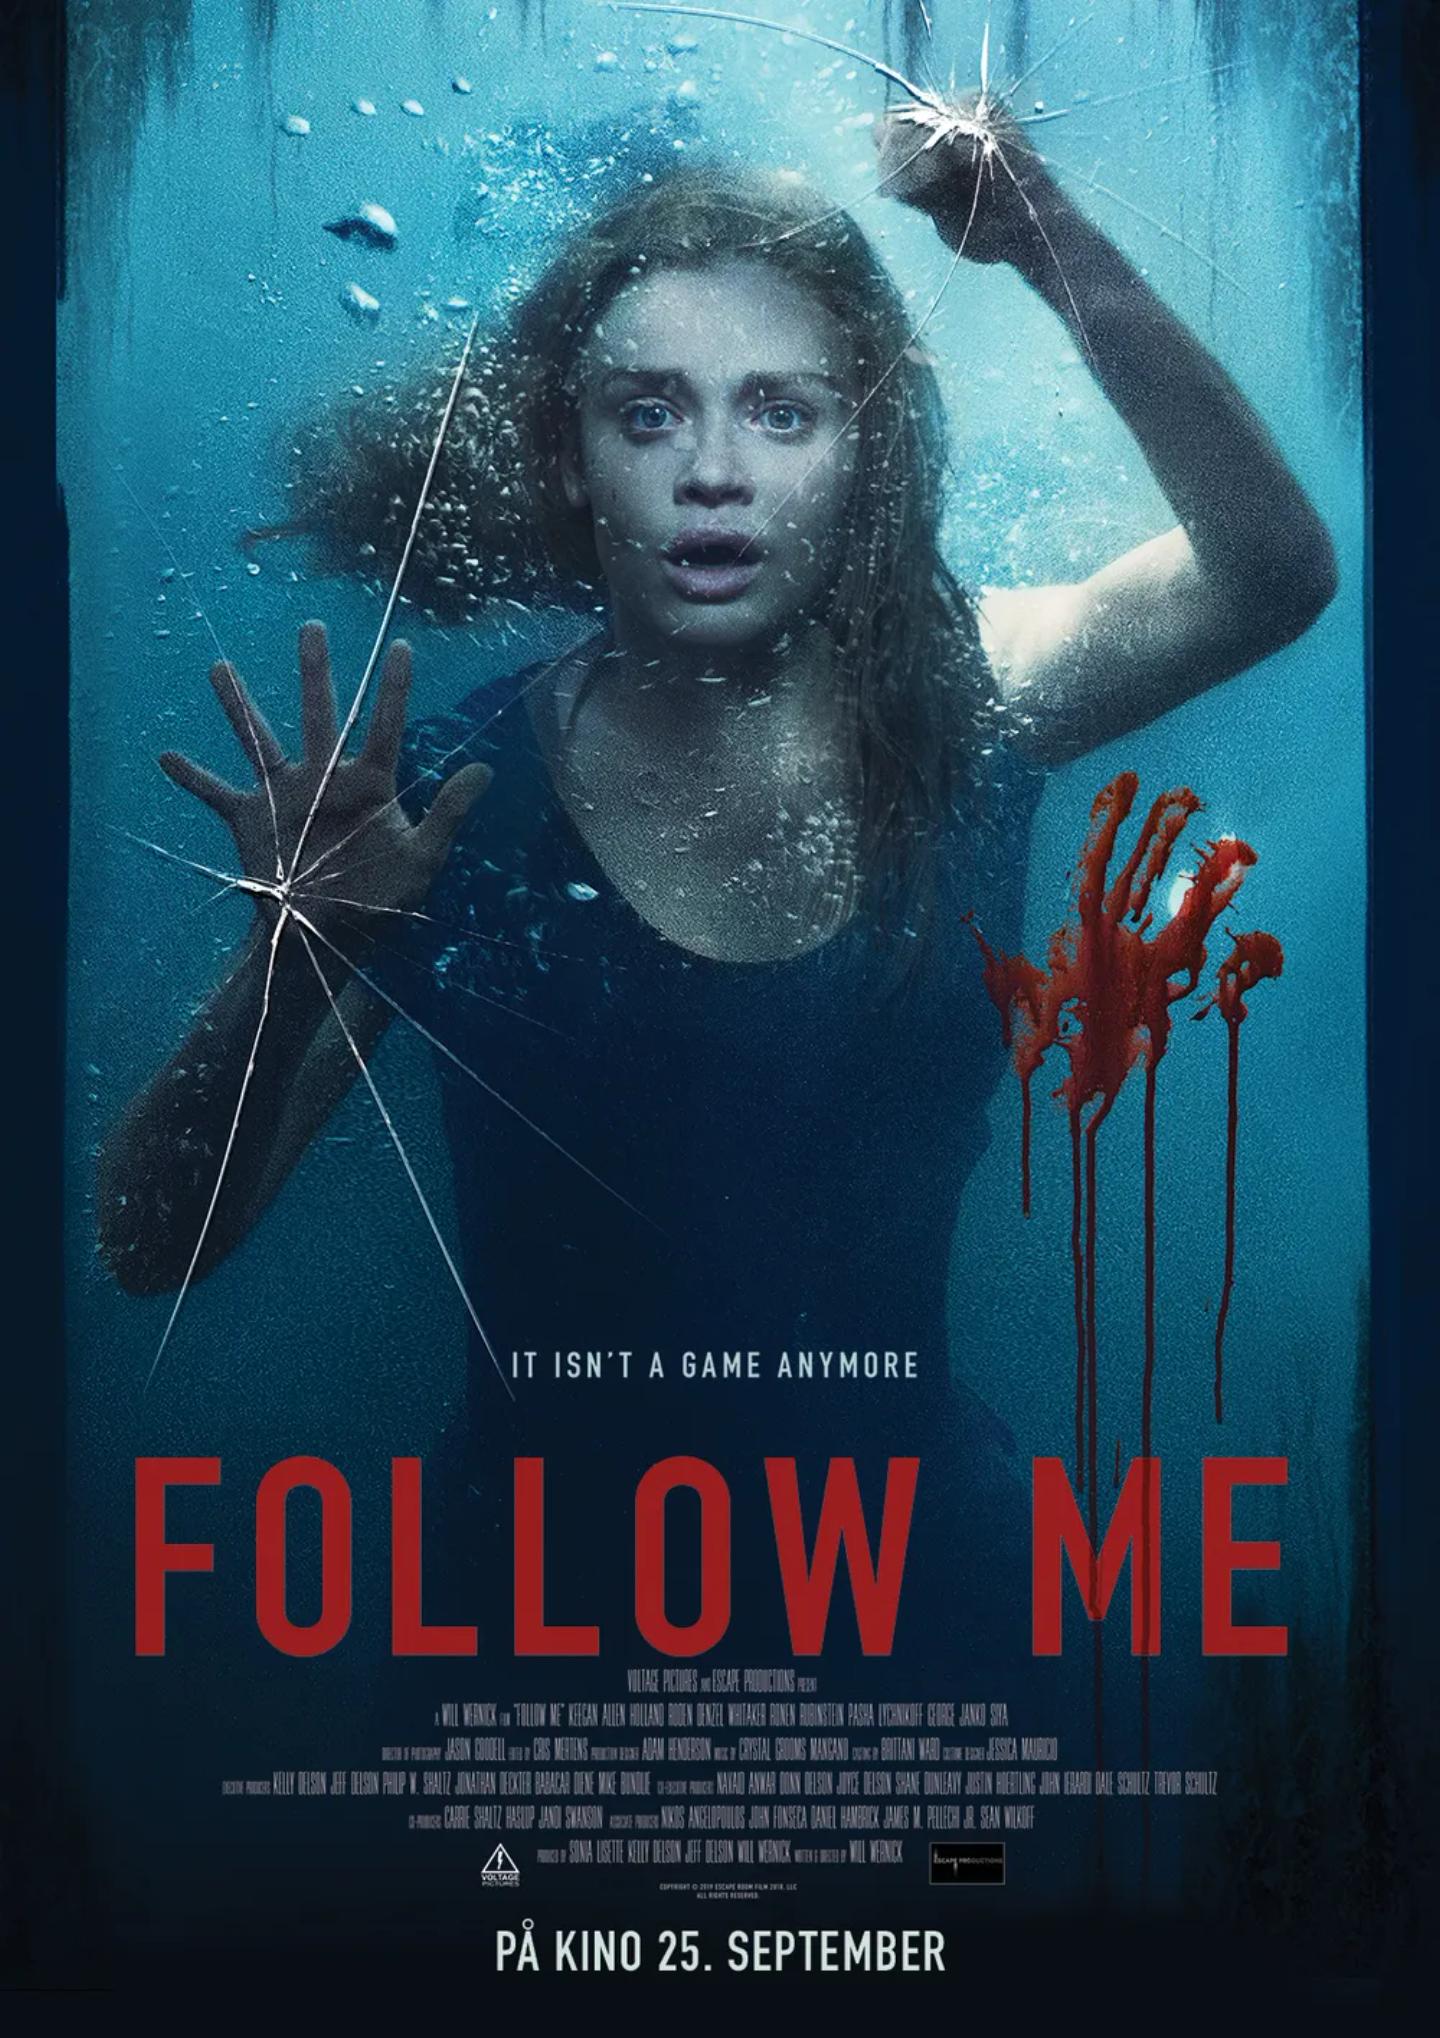 Plakat for 'Follow me'